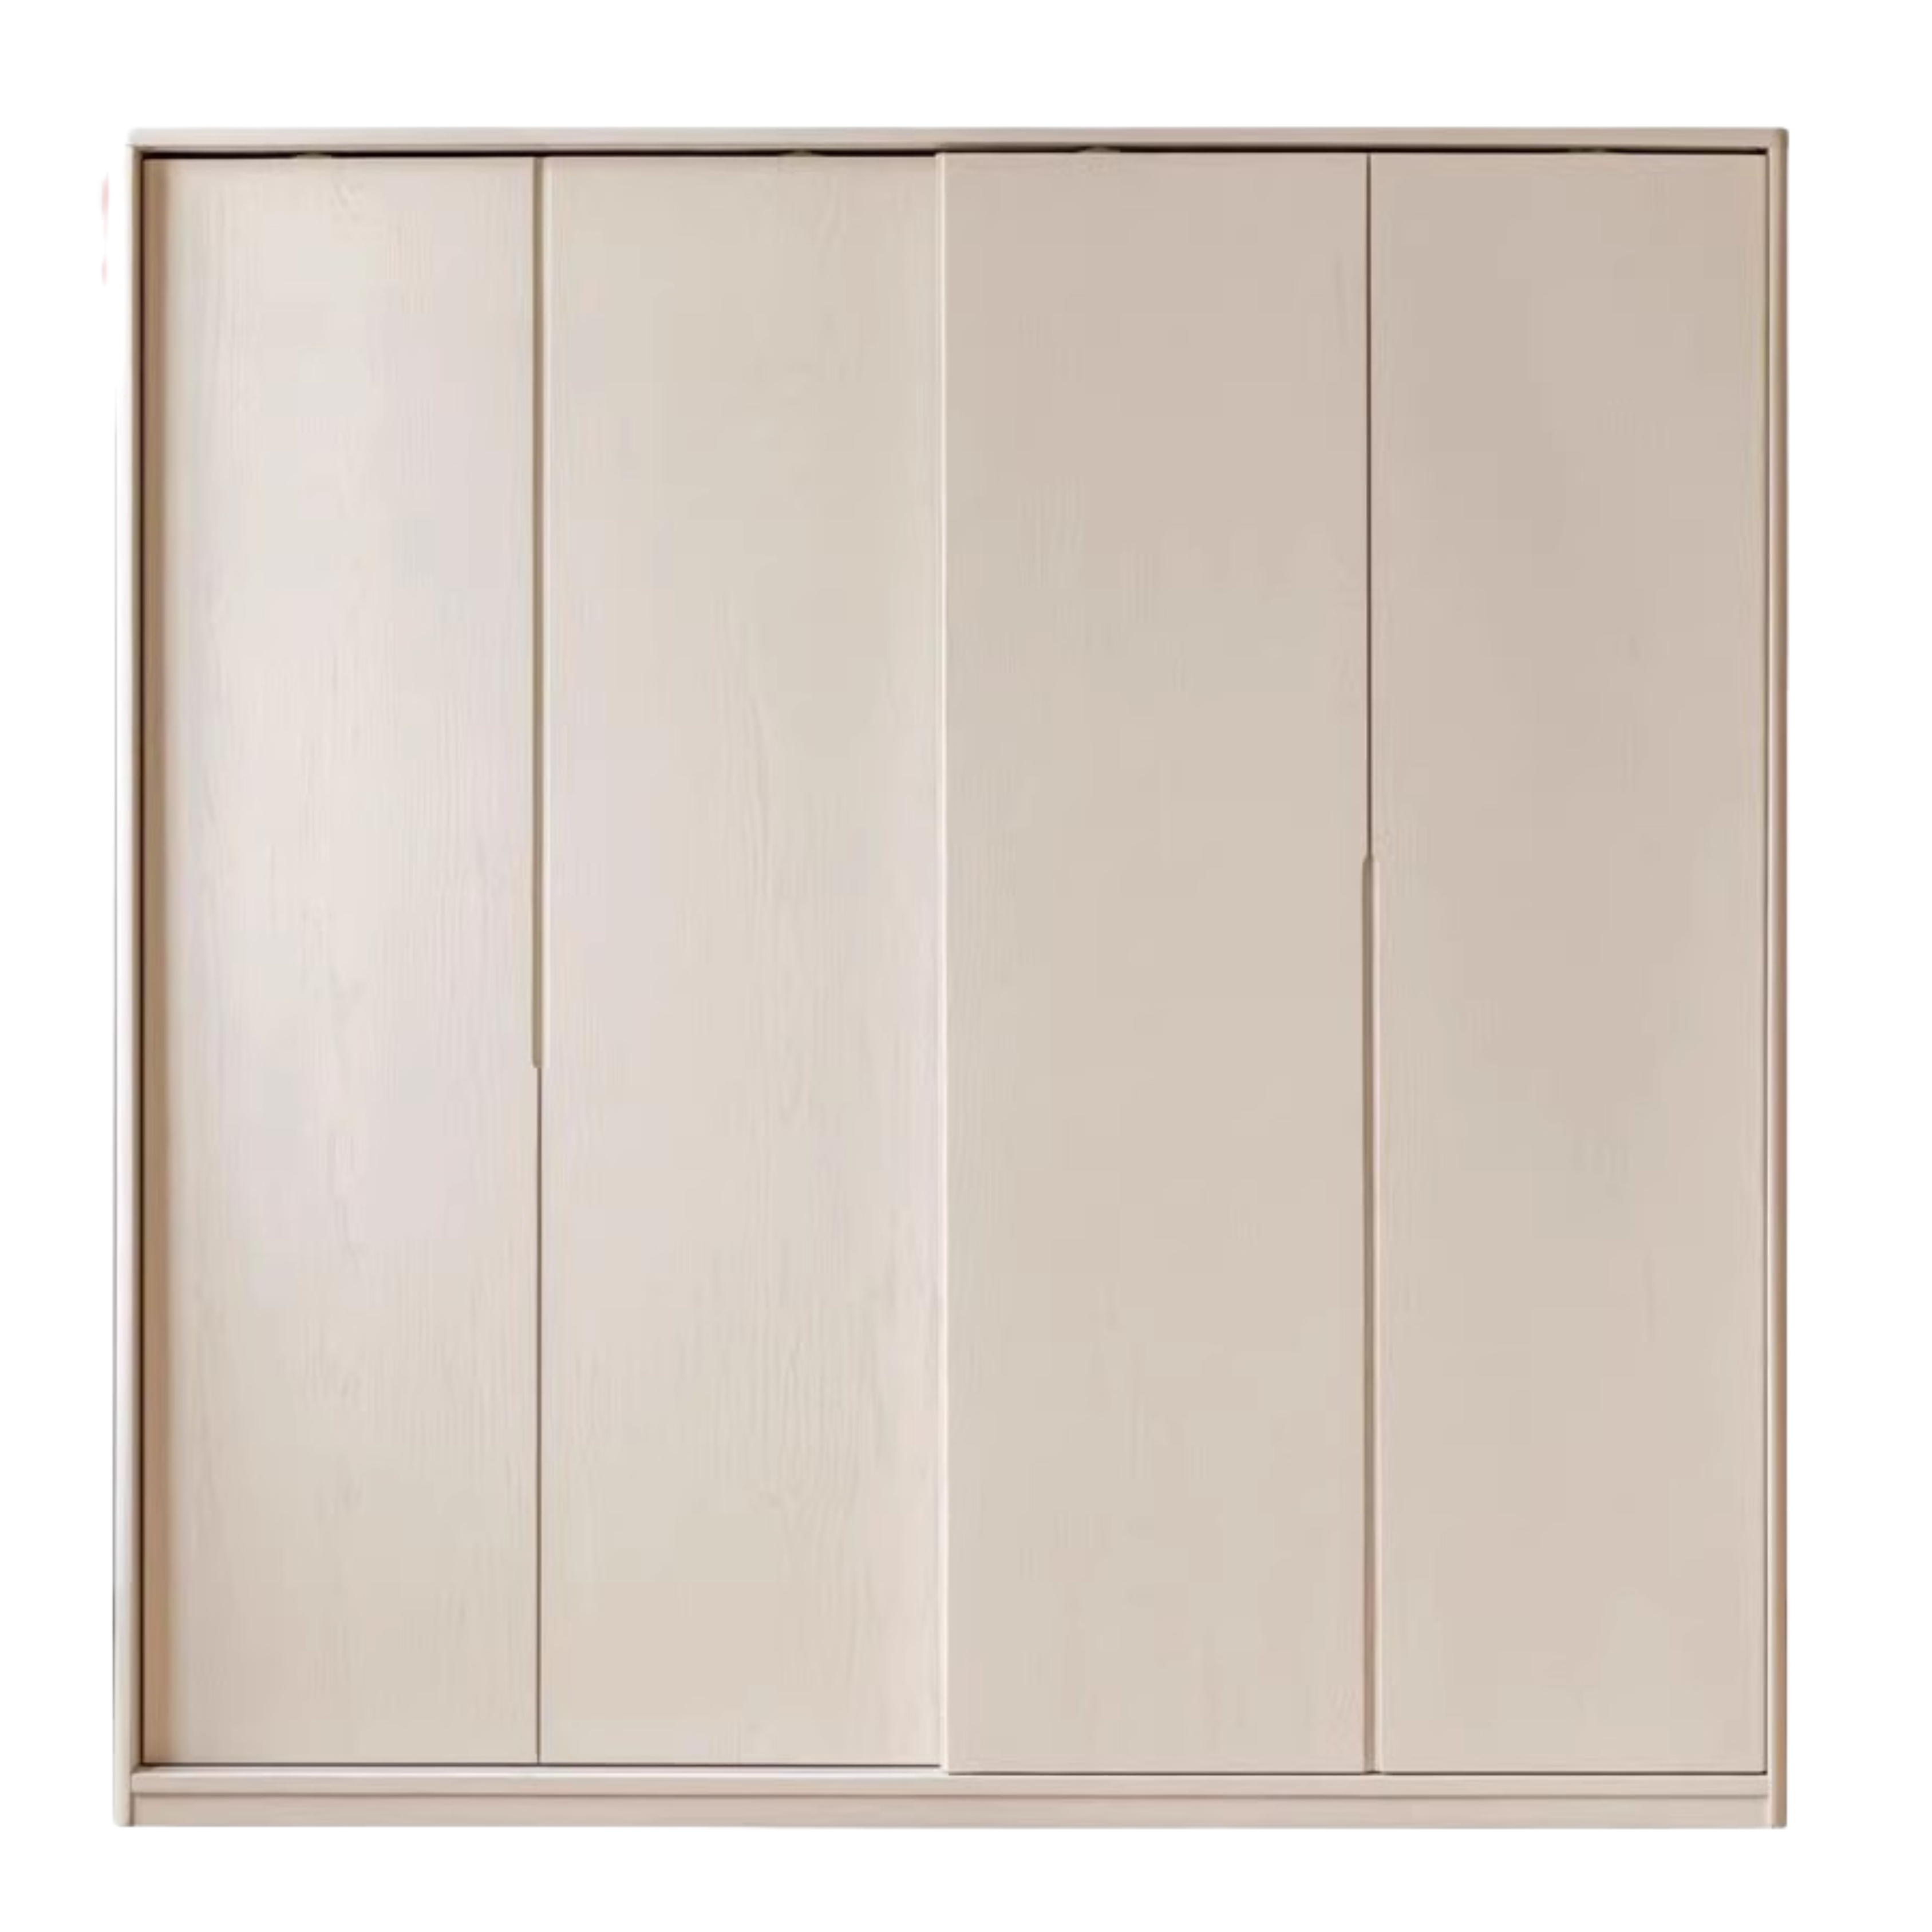 Oak solid wood cream wardrobe sliding door